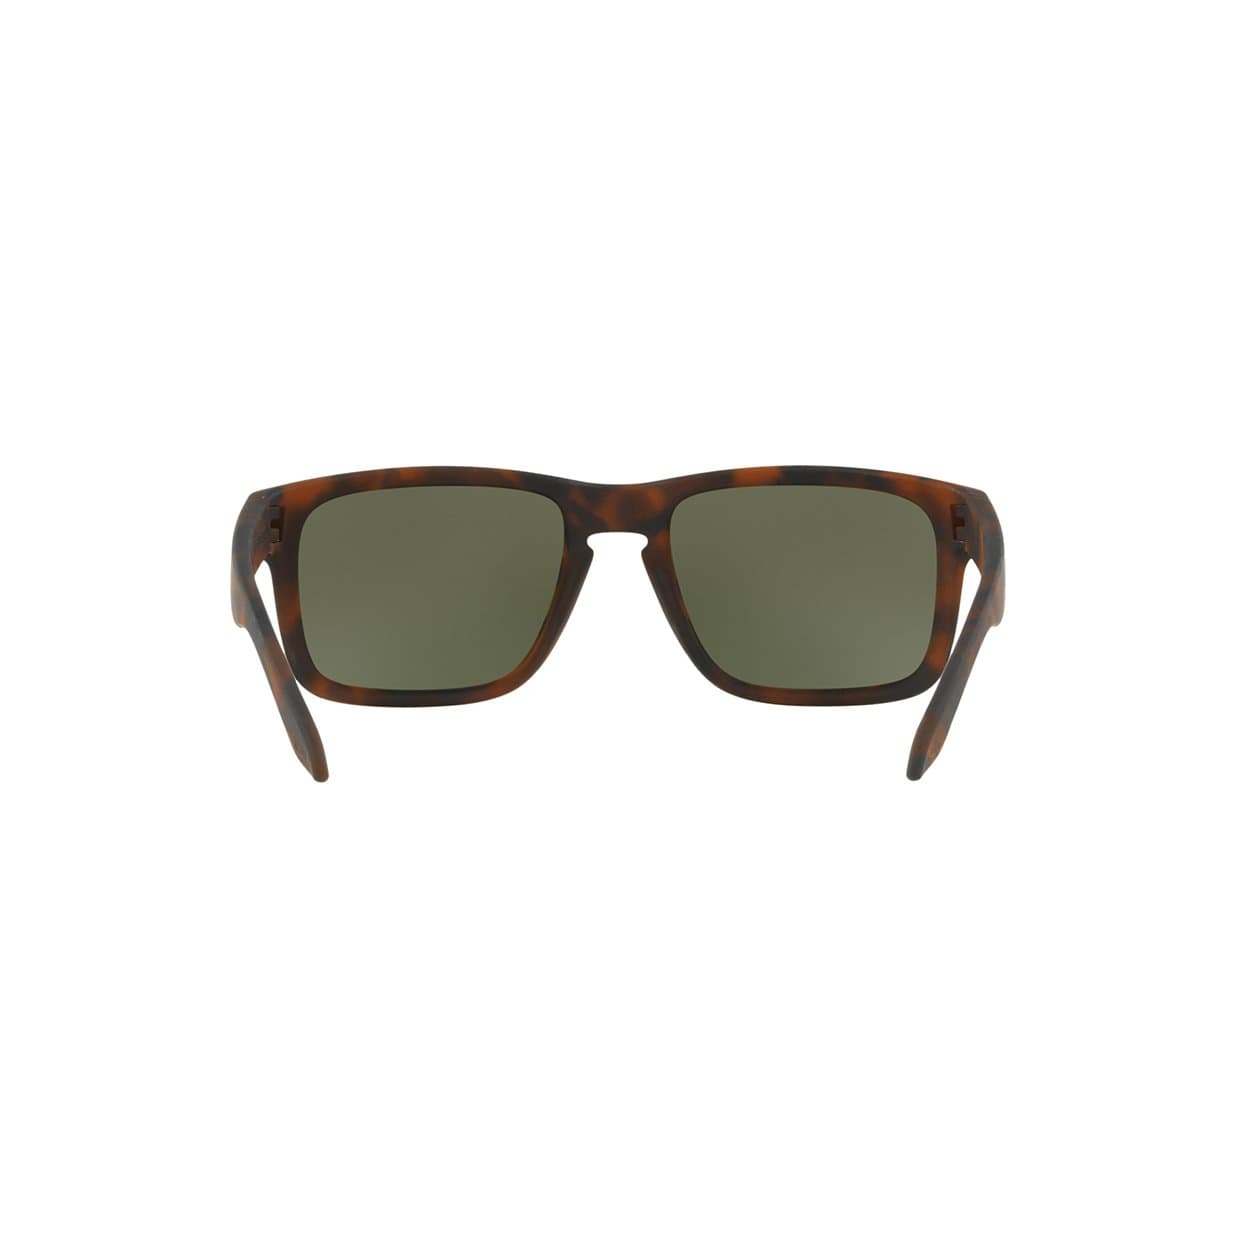 Oakley Eyewear Oakley Holbrook Sunglasses in Matte Brown Tortoise| Prizm Black Lens